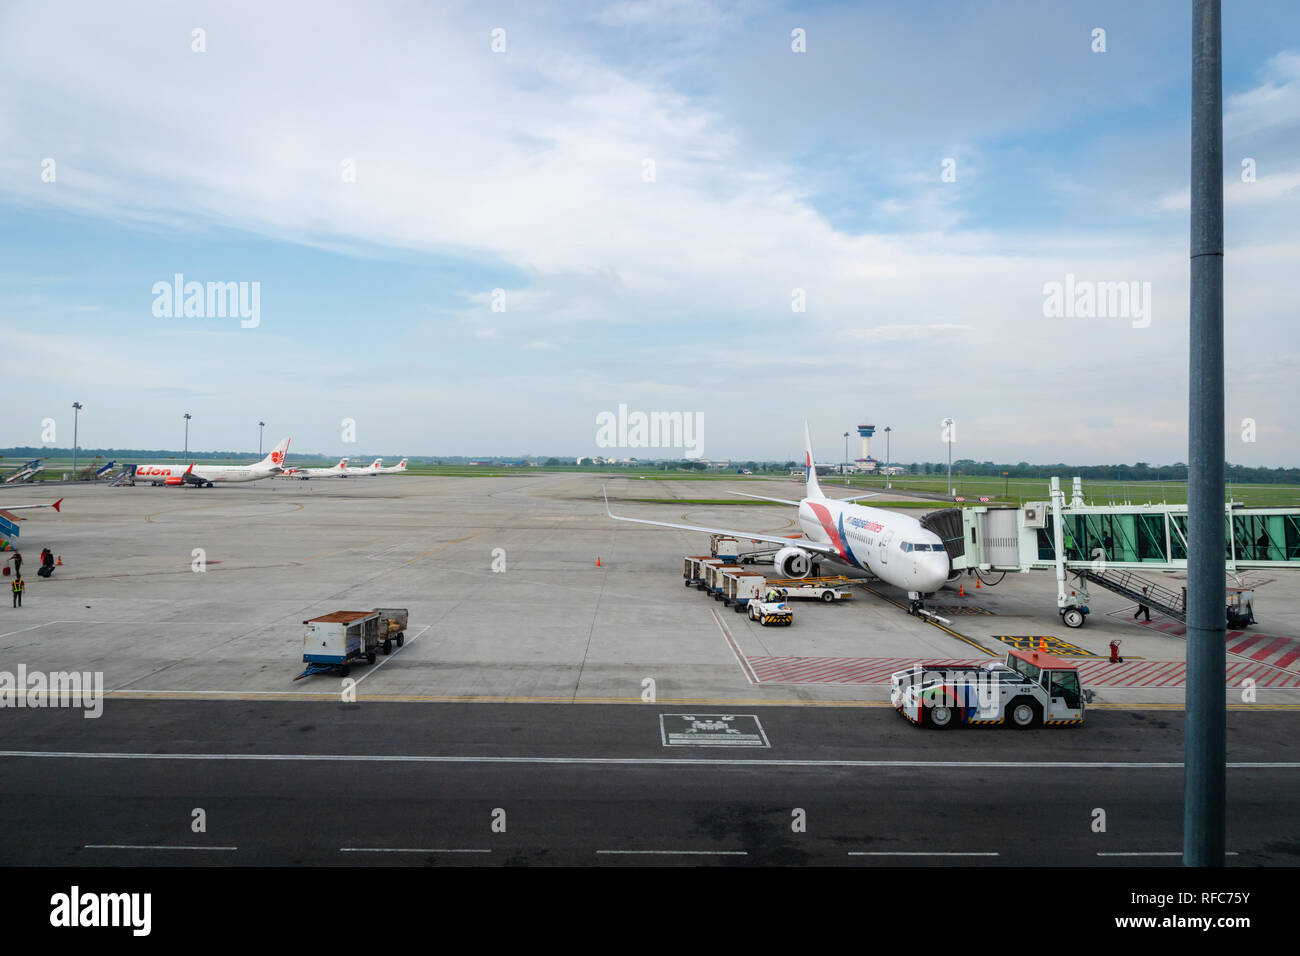 Medan, Indonesien - Januar 2018: Flugzeuge auf der Startbahn des Kualanamu Flughafen Medan, Indonesien. Kualanamu ist der drittgrößte Flughafen in Indonesien. Stockfoto